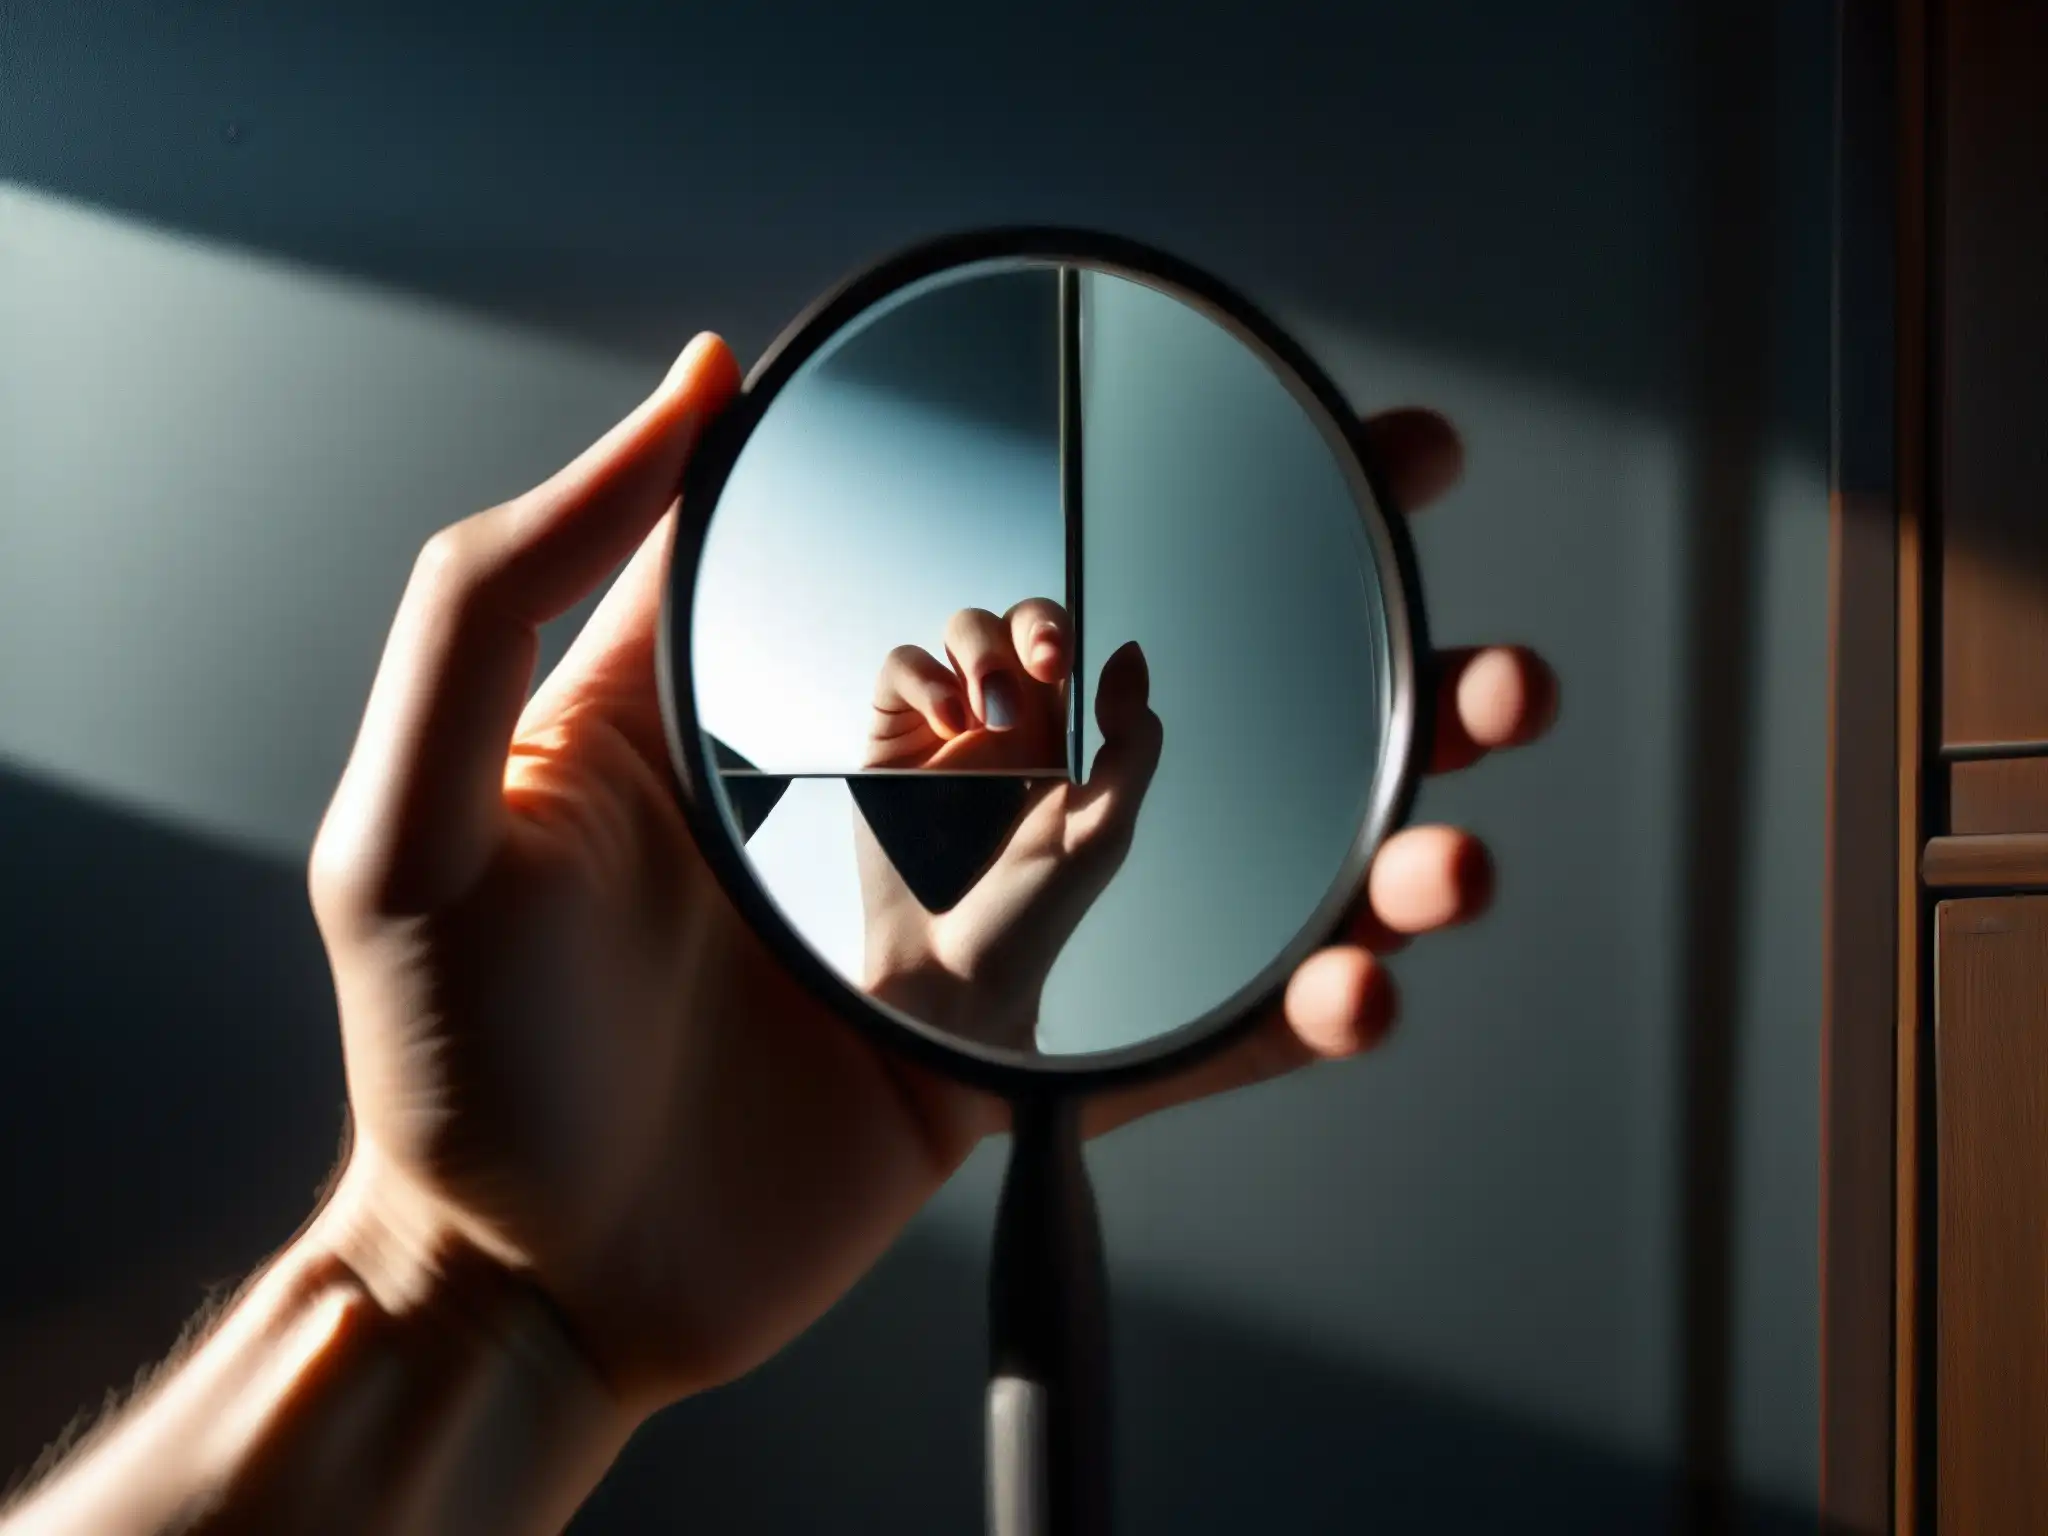 Una mano sostiene un espejo roto, reflejando una figura misteriosa